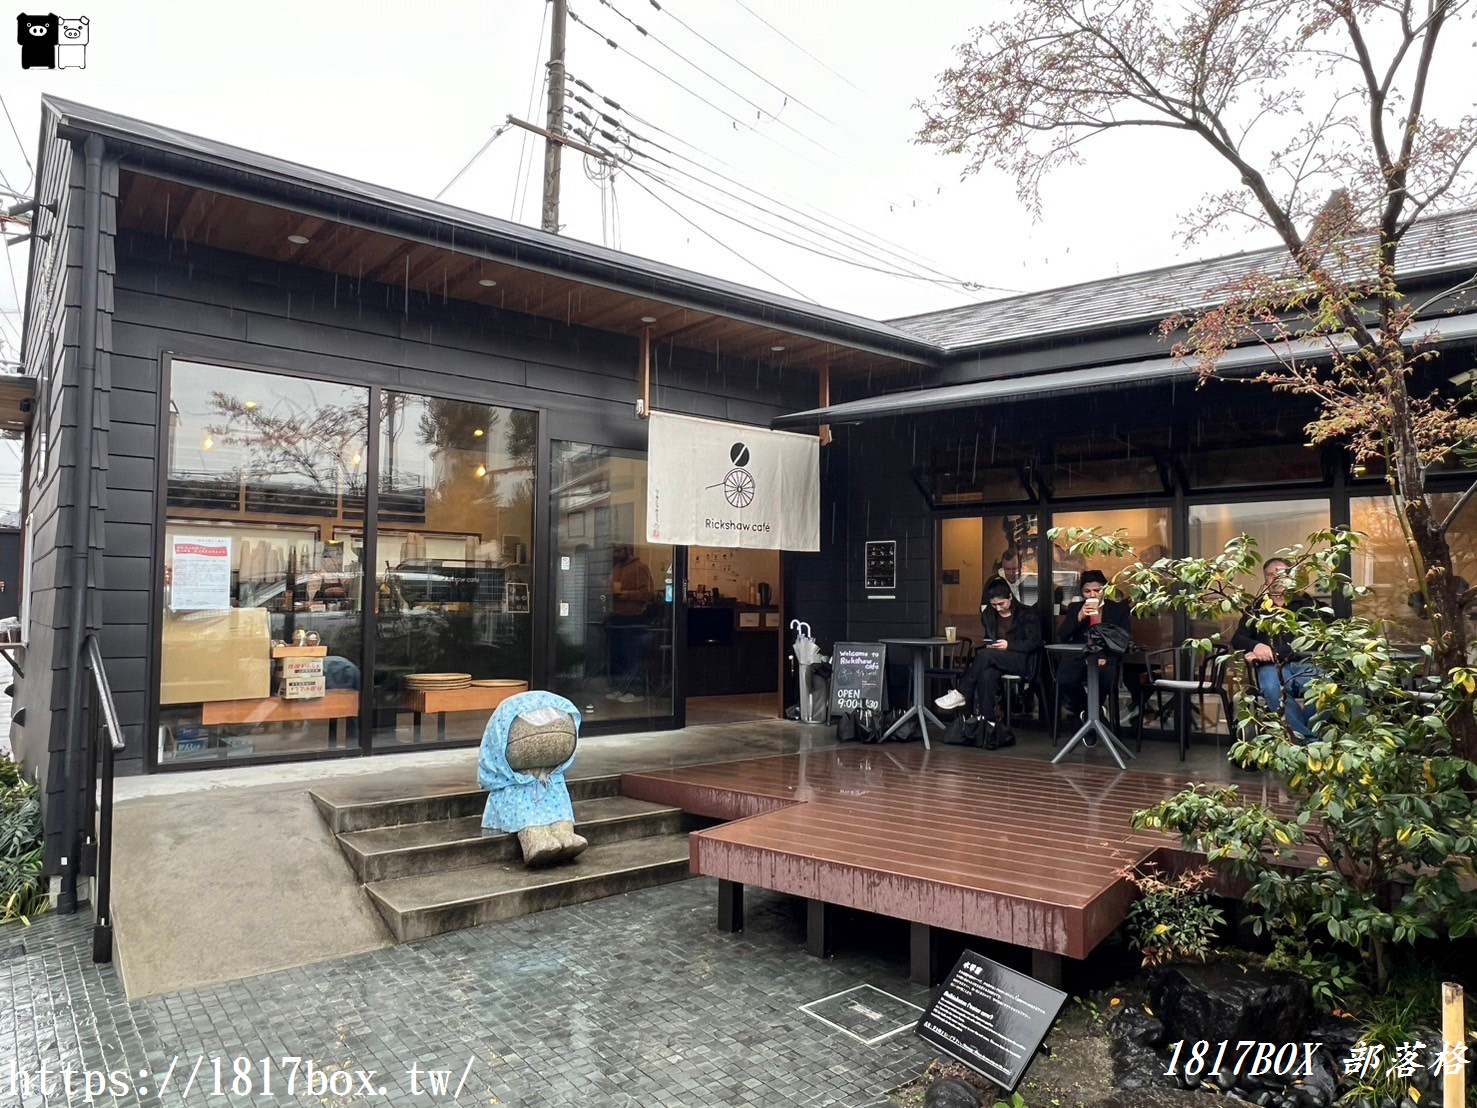 【京都美食】Rickshaw Café。JR嵯峨嵐山站。嵯峨嵐山駅好評咖啡店